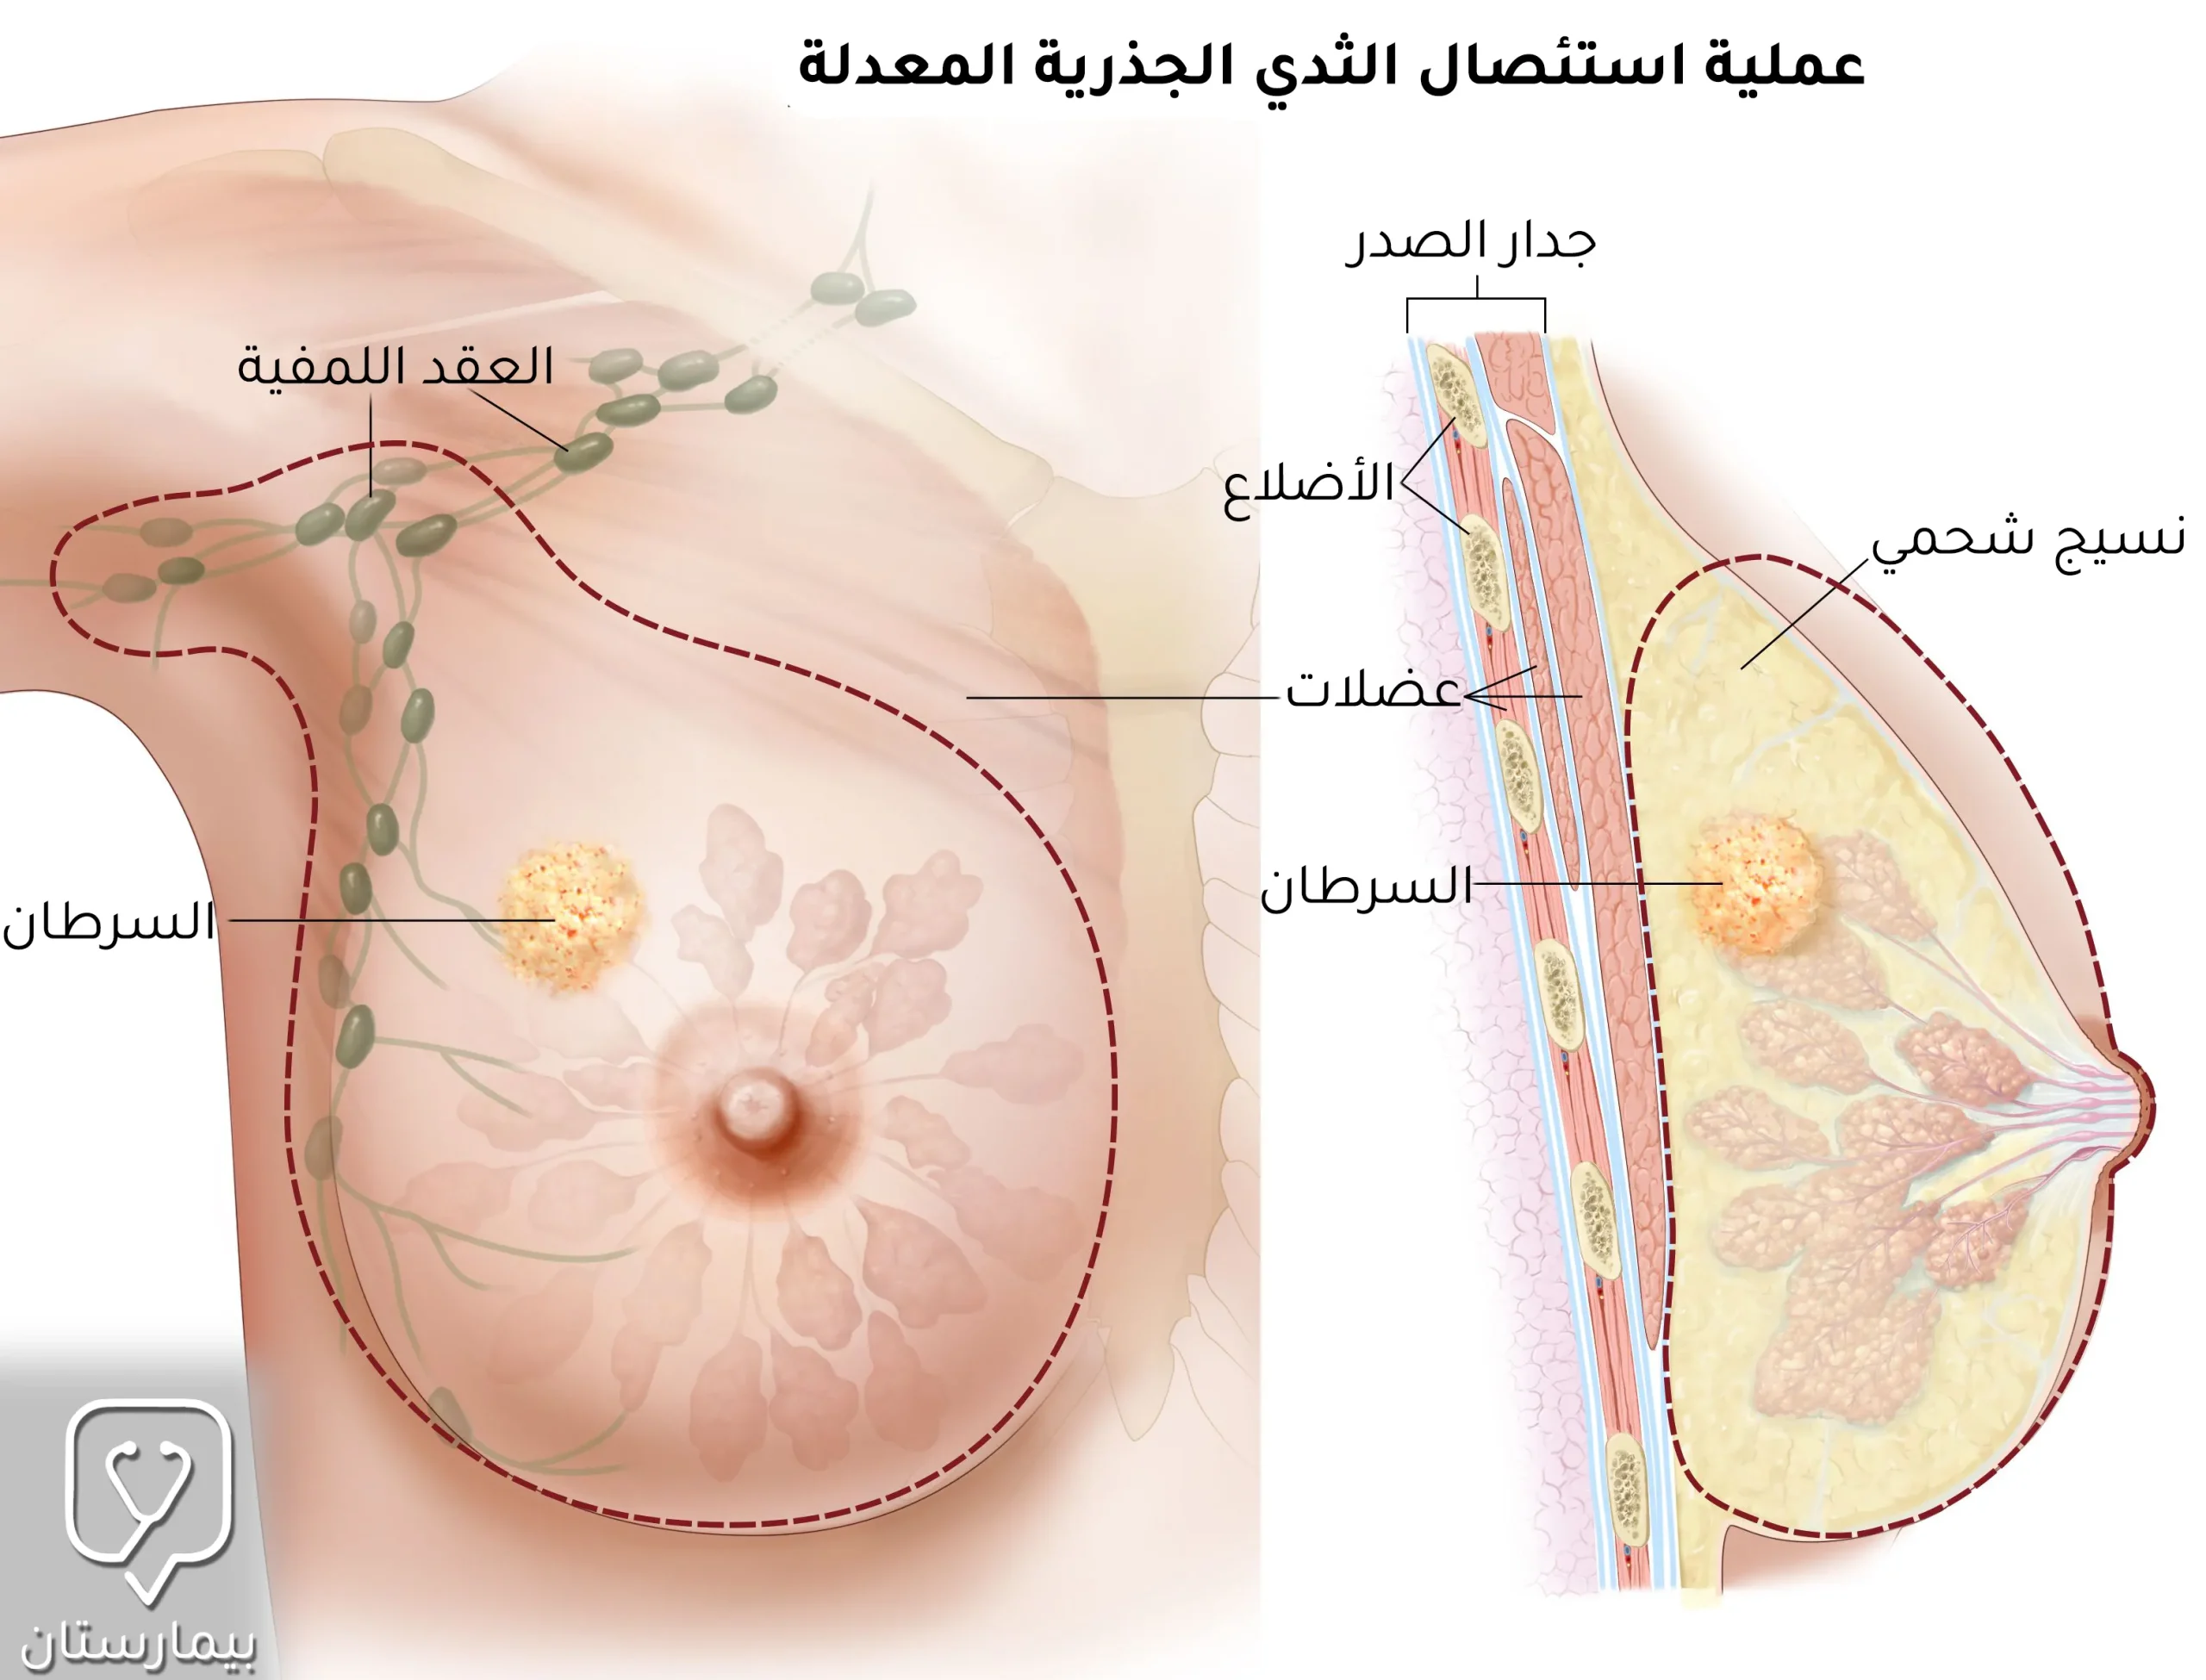 في عملية استئصال الثدي الجذرية المعدلة تتم إزالة كامل نسيج الثدي مع العقد البلغمية الإبطية